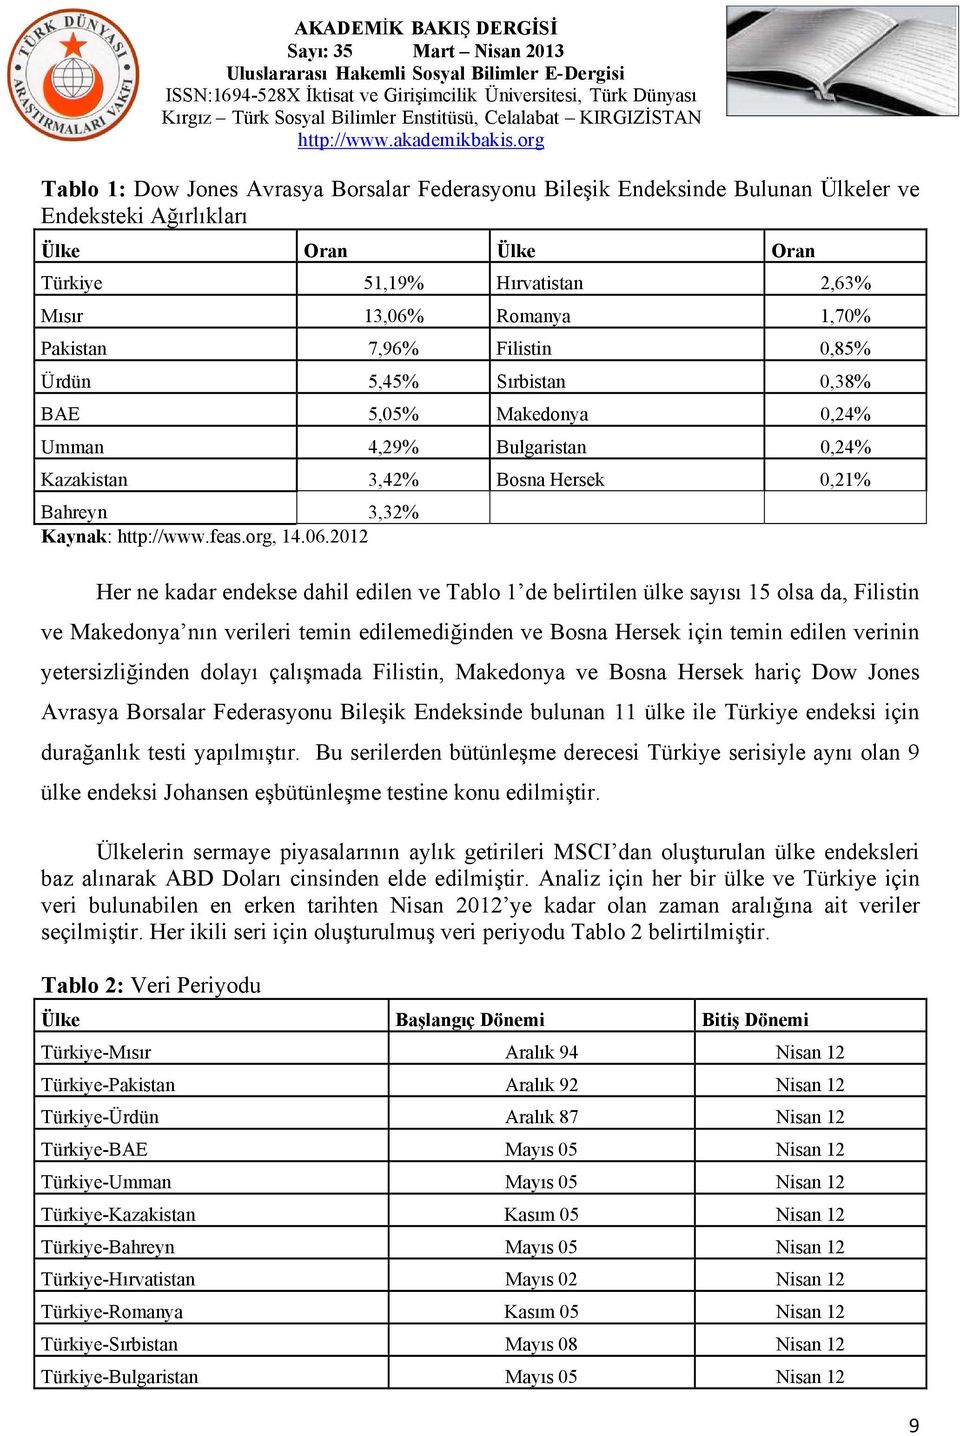 2012 Her ne kadar endekse dahil edilen ve Tablo 1 de belirtilen ülke sayısı 15 olsa da, Filistin ve Makedonya nın verileri temin edilemediğinden ve Bosna Hersek için temin edilen verinin